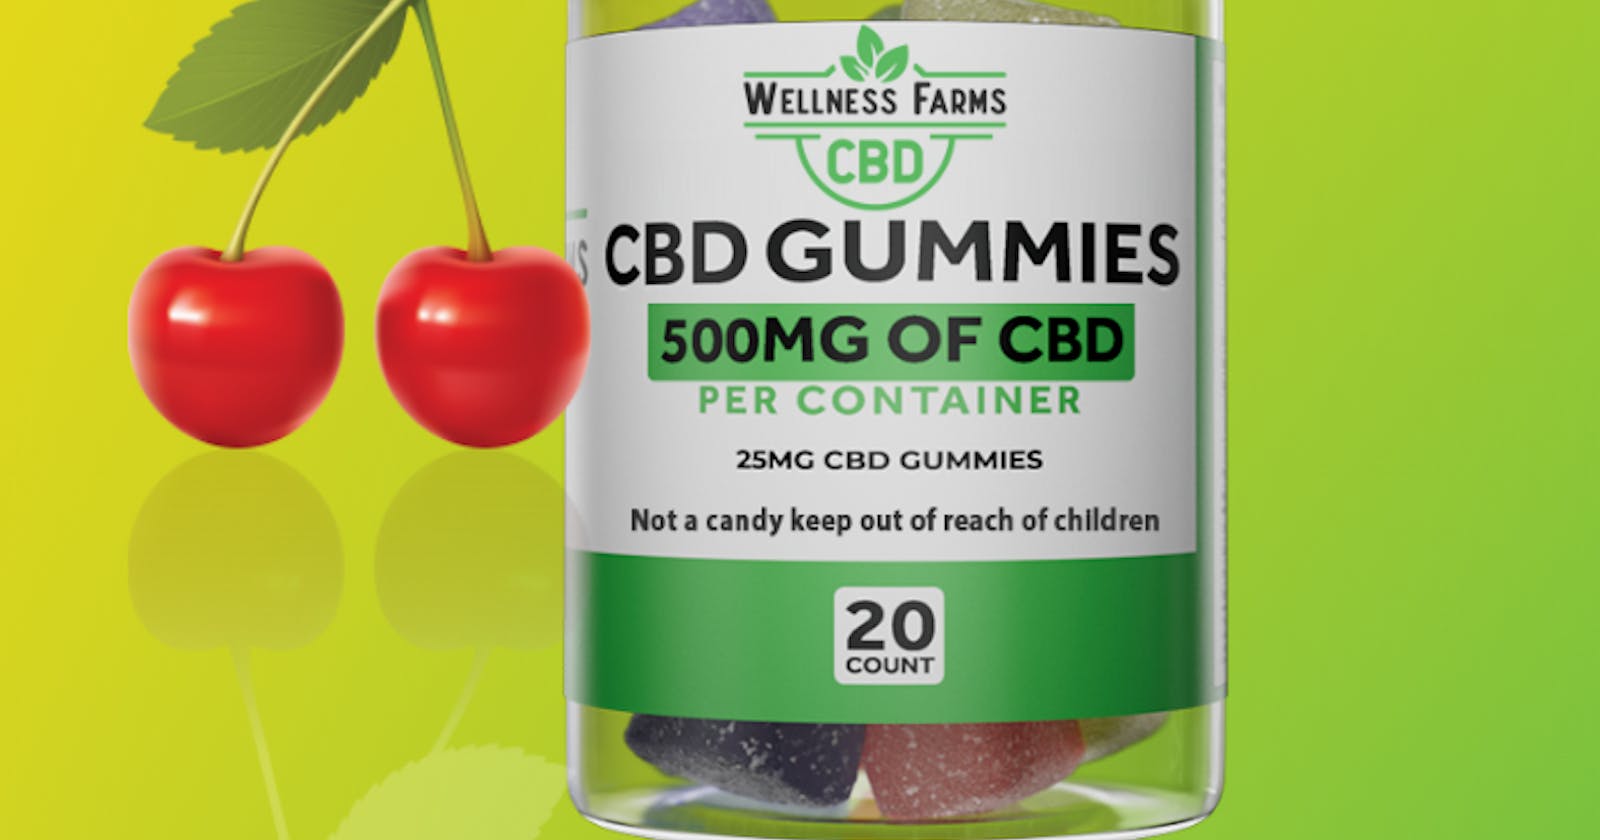 Wellness Farms CBD Gummies Advantage